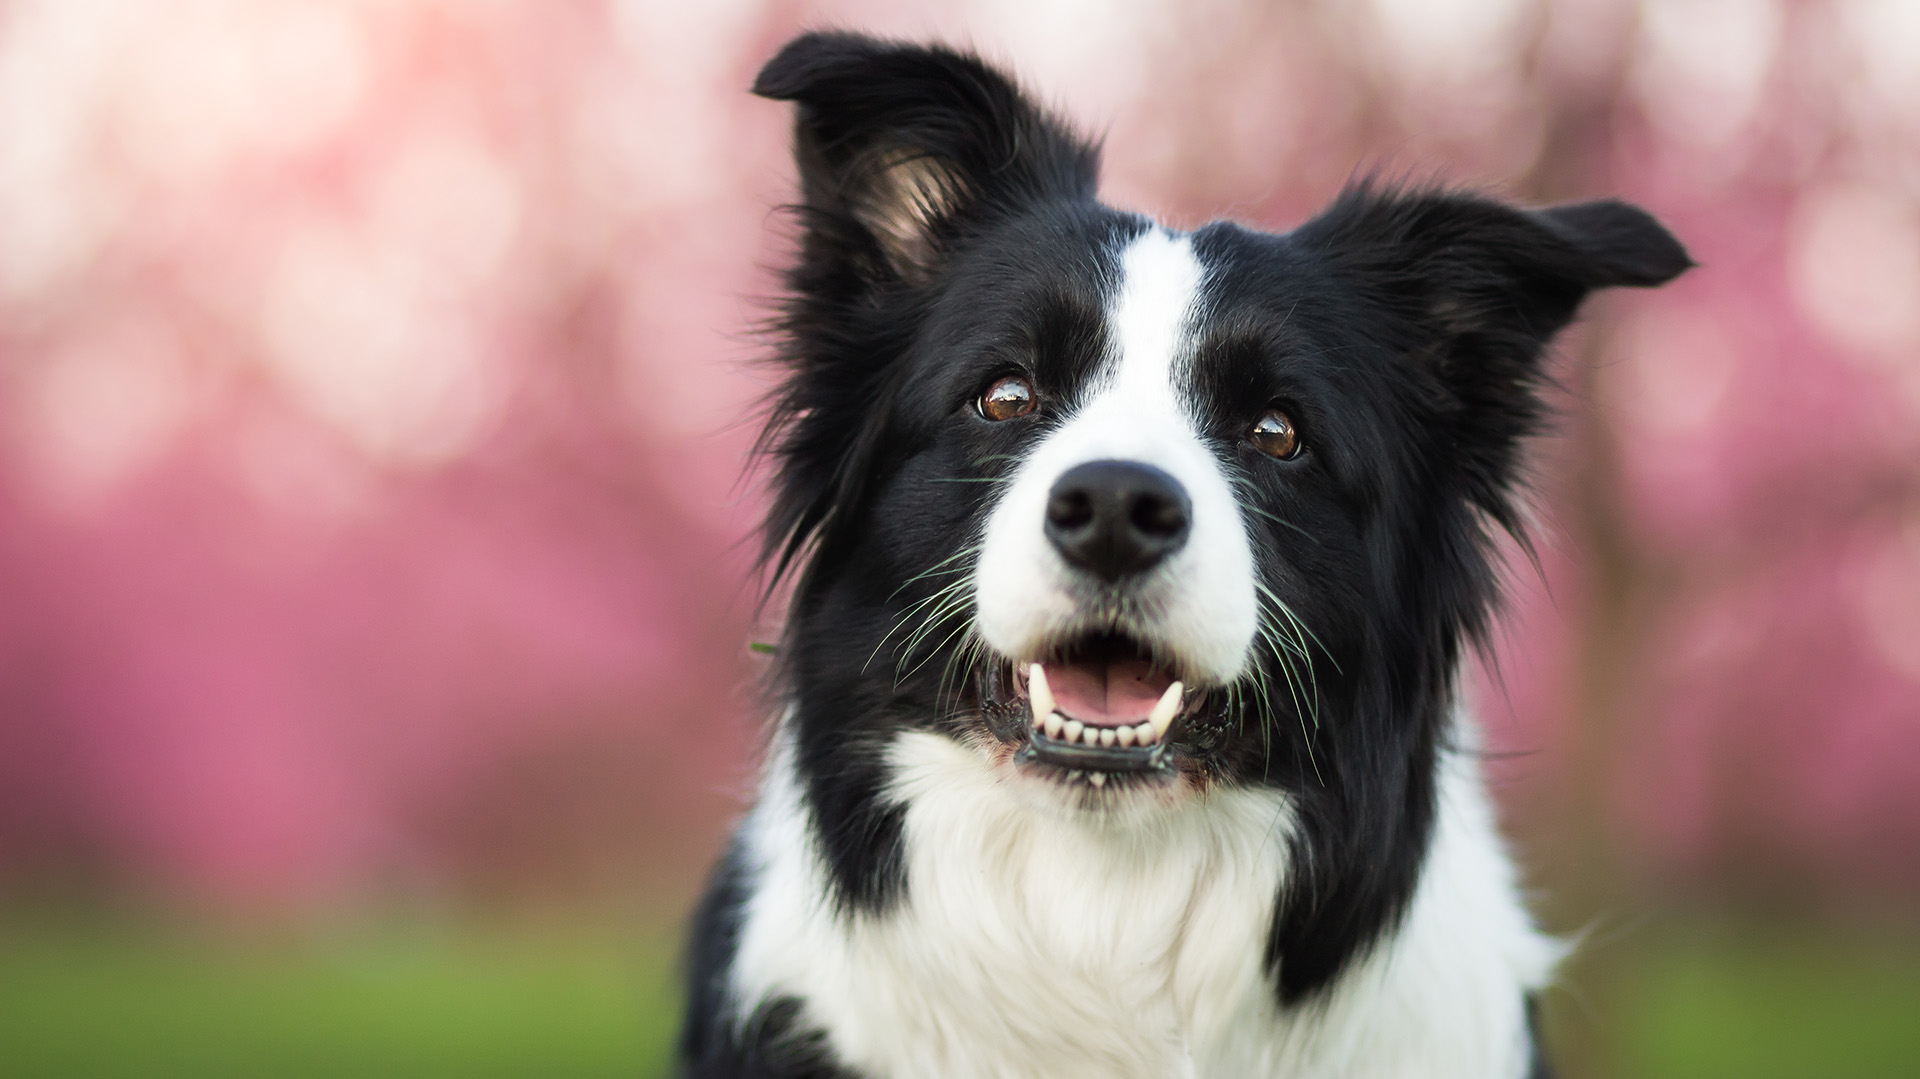 El Border Collie es una de las razas de perros más inteligentes elegido por los jueces casi de forma unánime (Shutterstock.com)